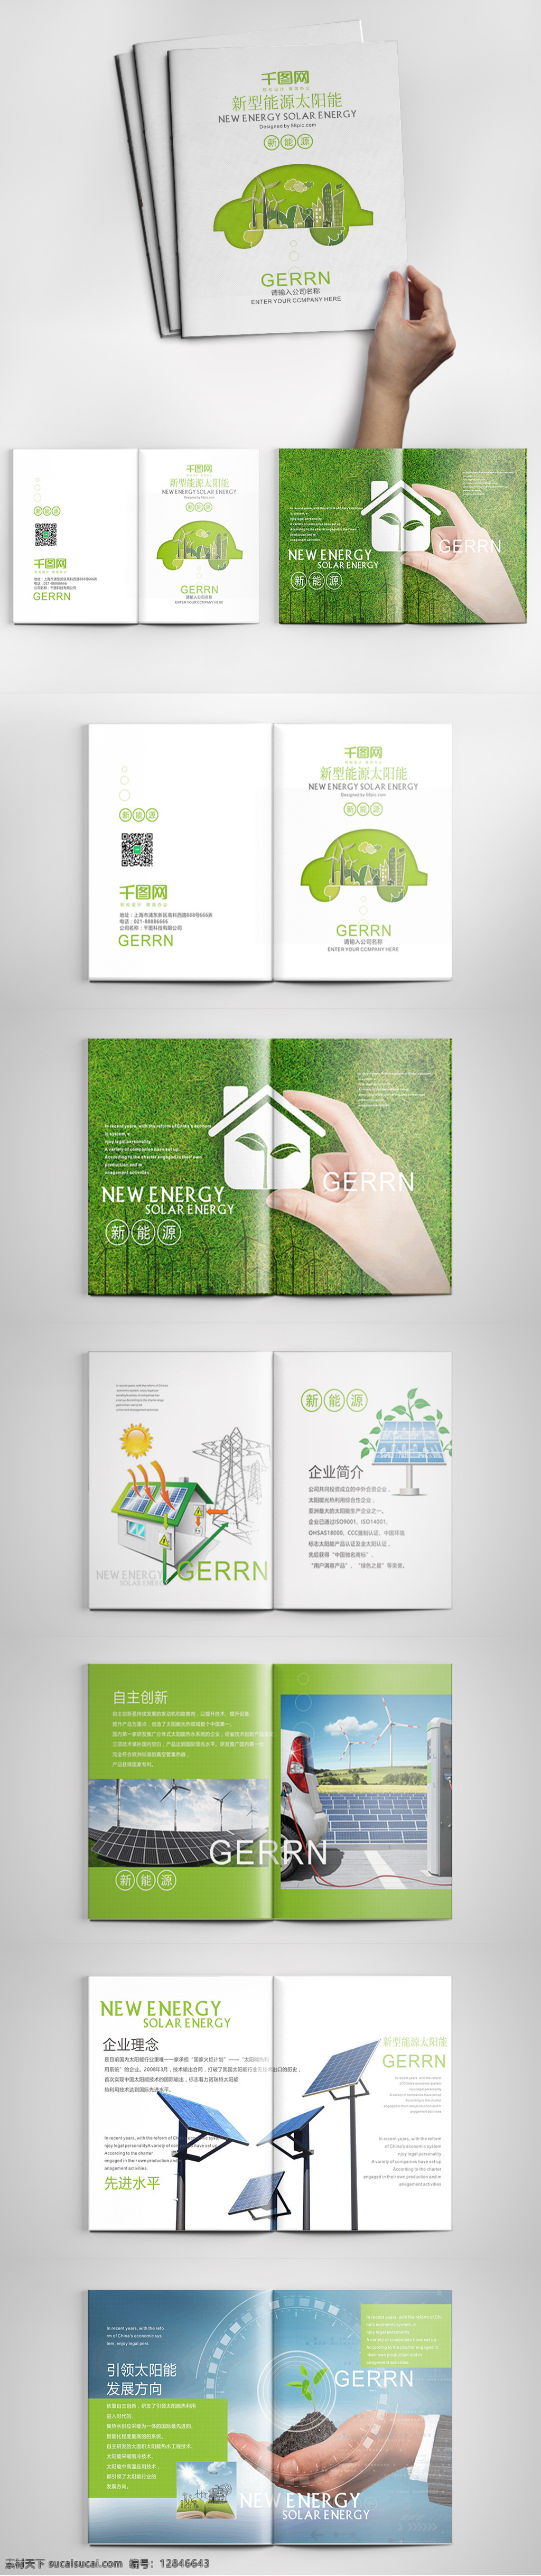 绿色环保 太阳能 产品 画册 产品画册 画册模板 画册设计 环保 绿色 绿色画册 绿色科技画册 能源画册 太阳能画册